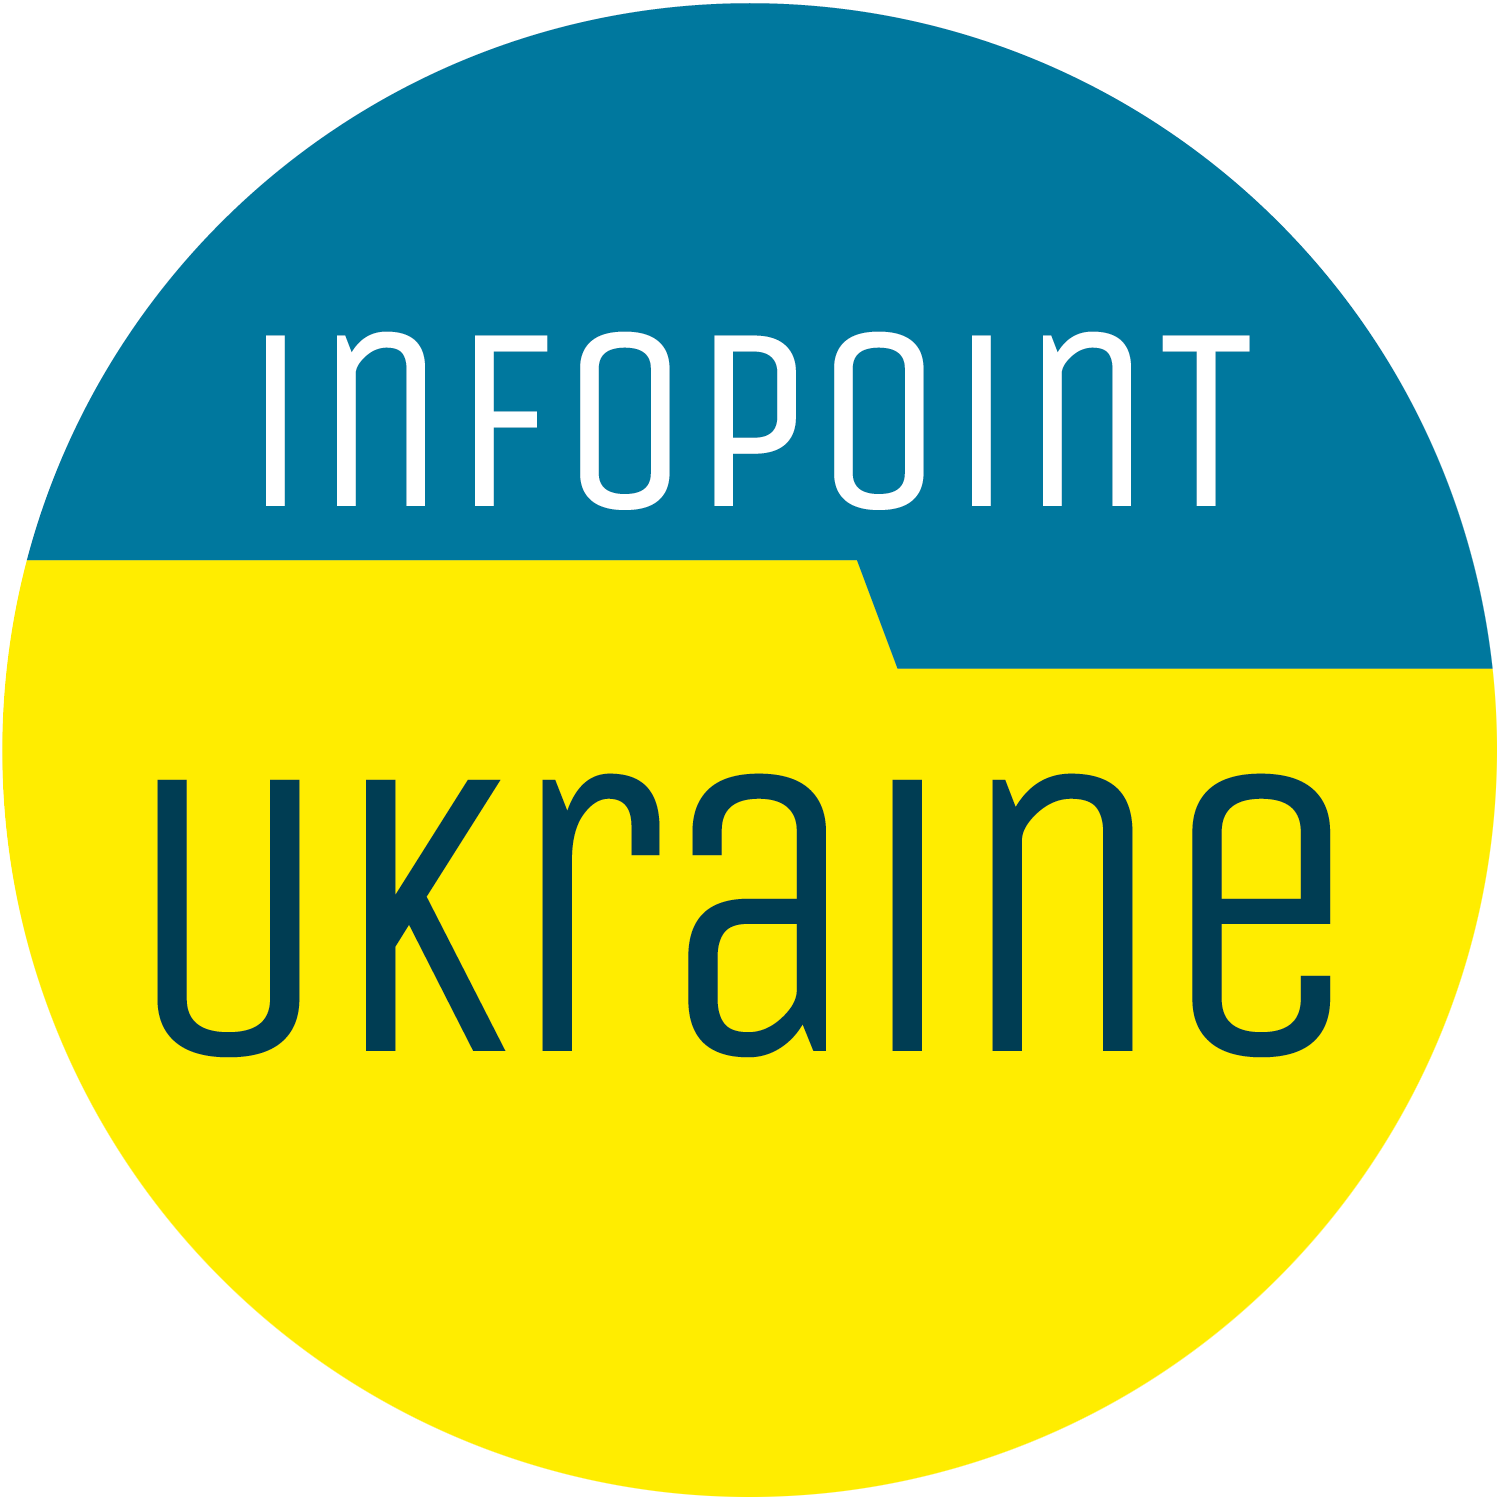 Infopoint Ukraine